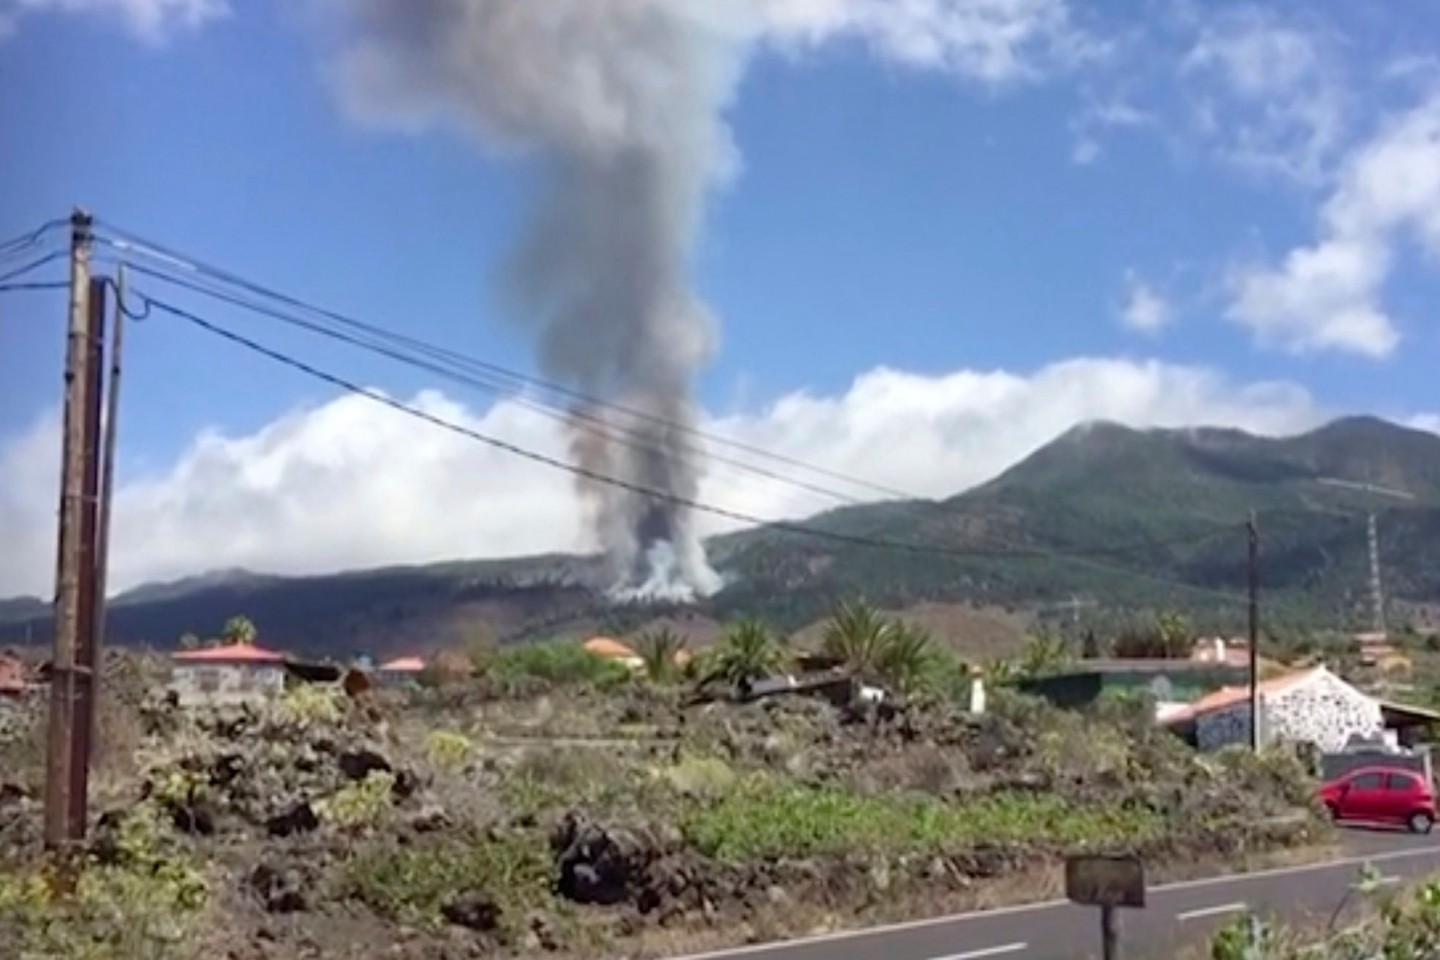 Auf der Kanareninsel La Palma ist ein Vulkan ausgebrochen.